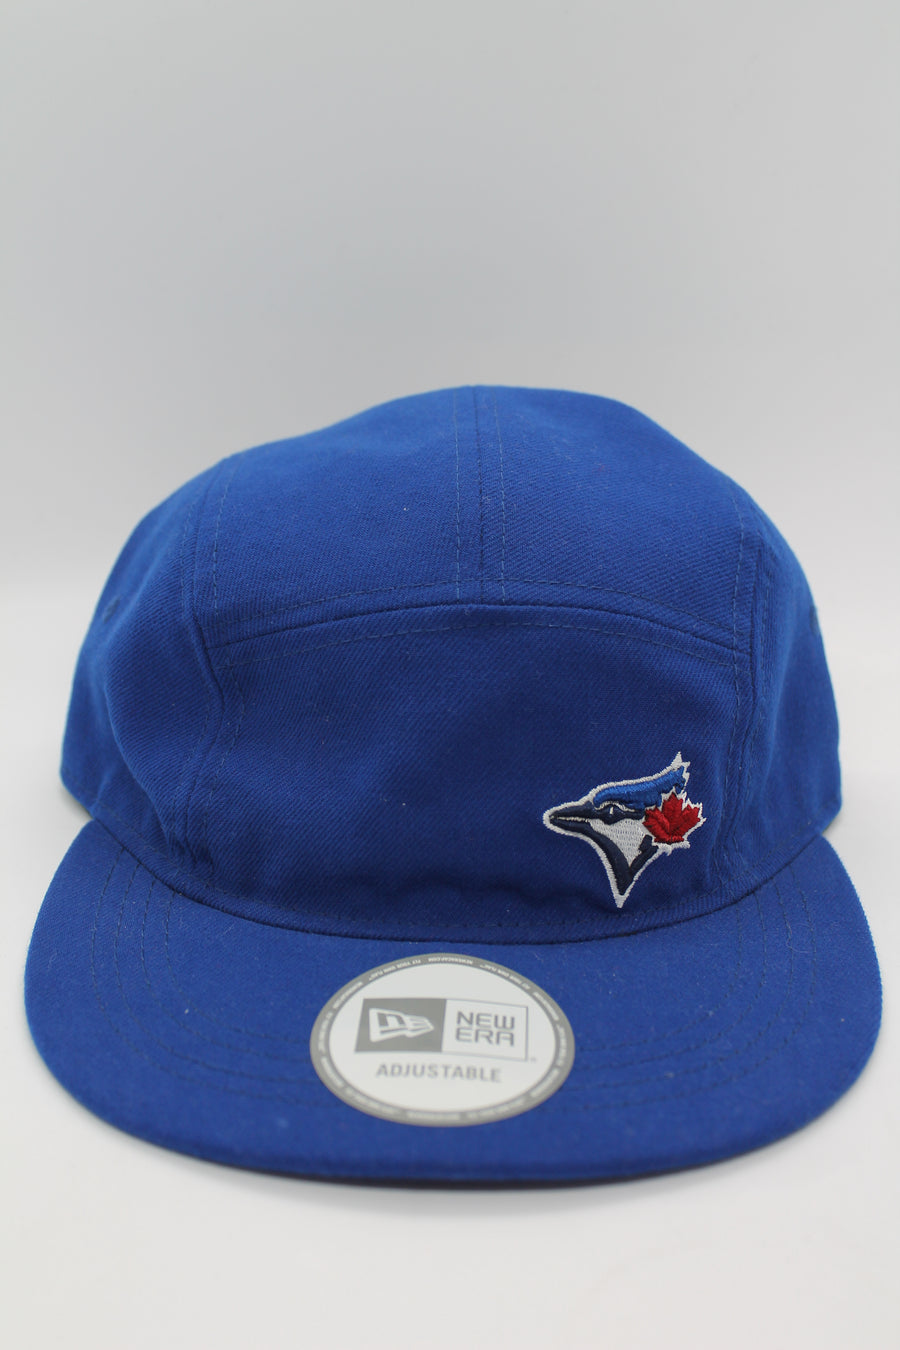 MLB Toronto Blue Jays New Era Adjustable Hat